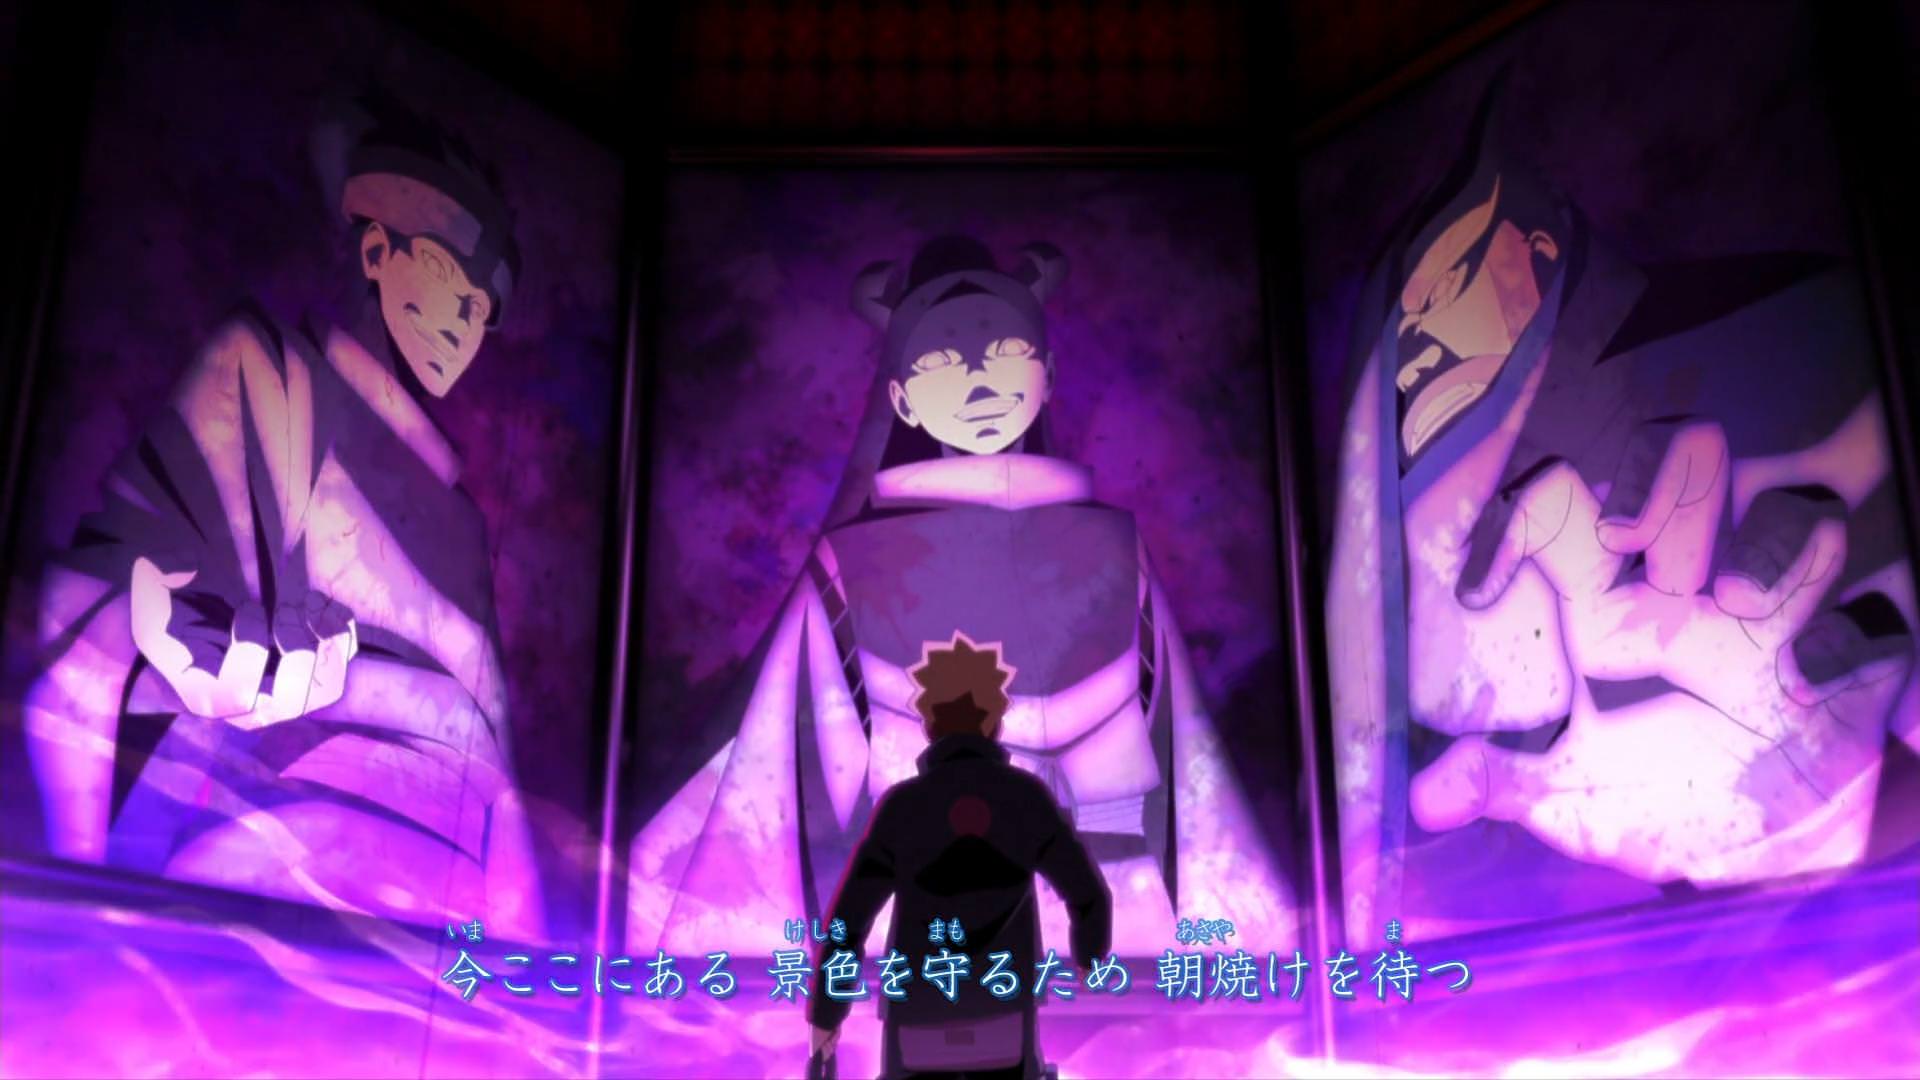 VIZ on X: #Boruto: Naruto Next Generations, Episode 243 - Where